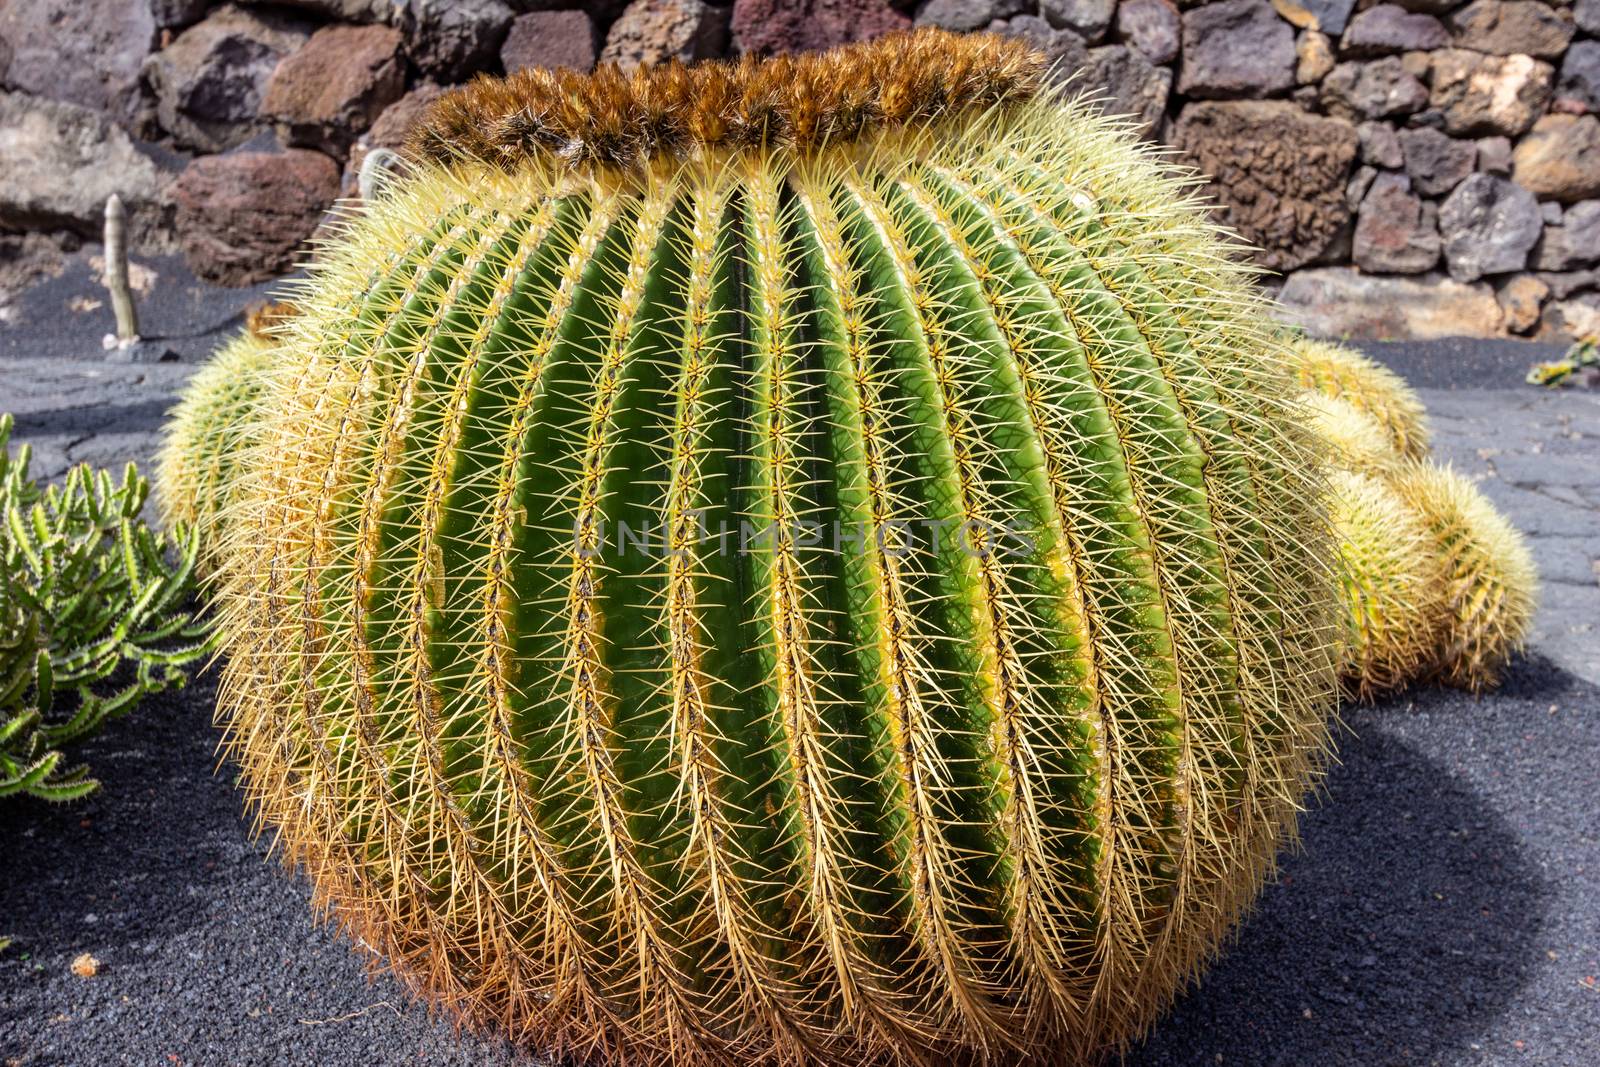 Golden barrel cactus  in Jardin de Cactus by Cesar Manrique on canary island Lanzarote, Spain